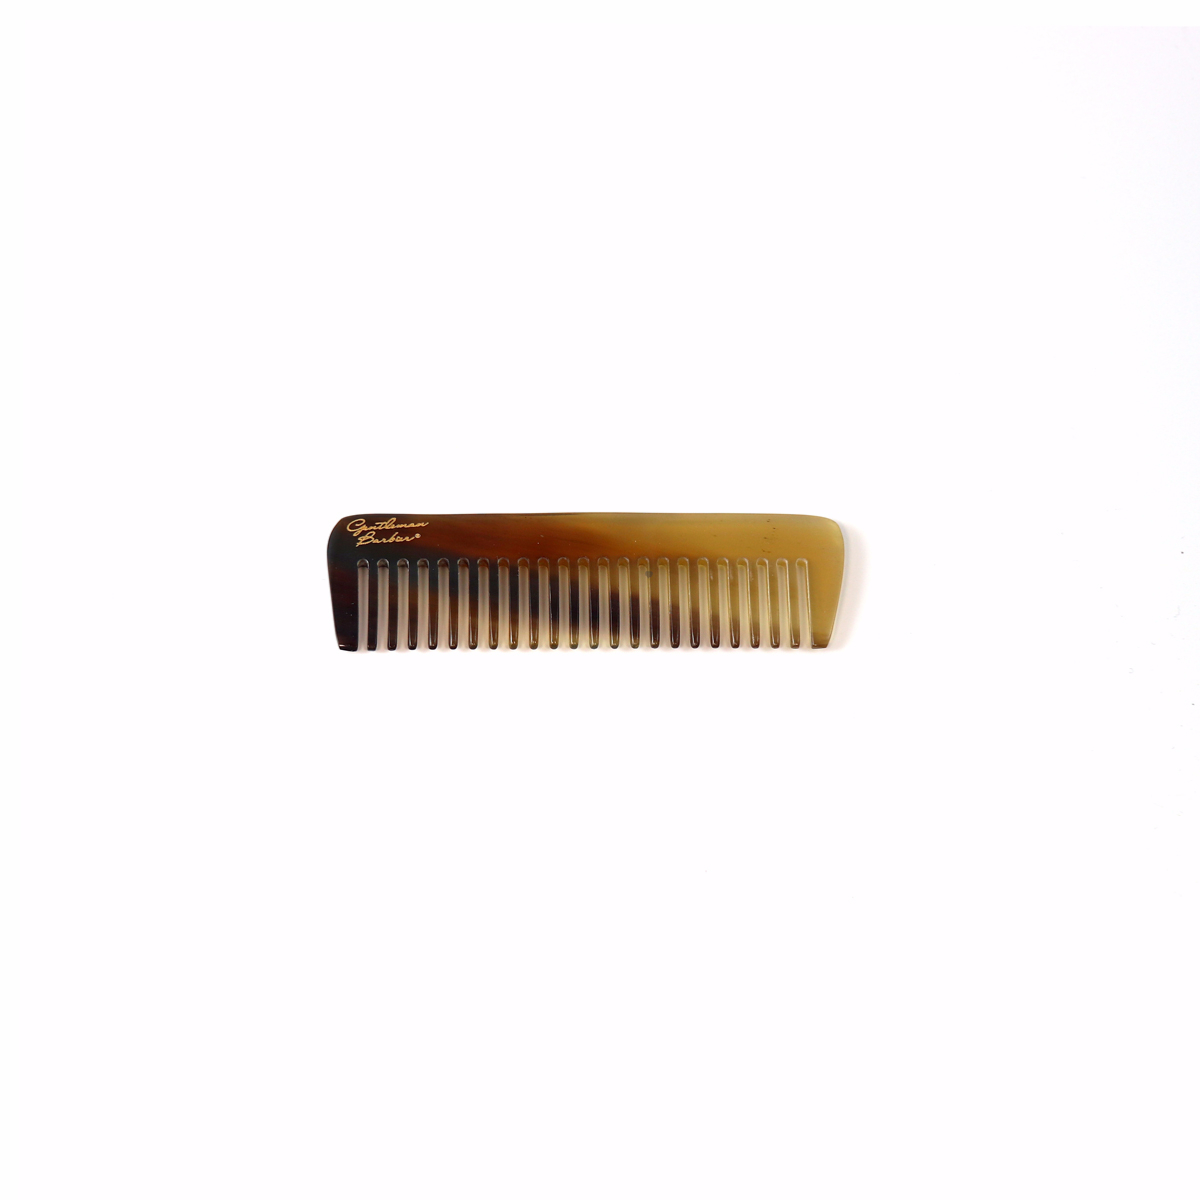 Peigne à Barbe 9 cm - Corne naturelle des Pyrénées - Structurer et coiffer  la barbe